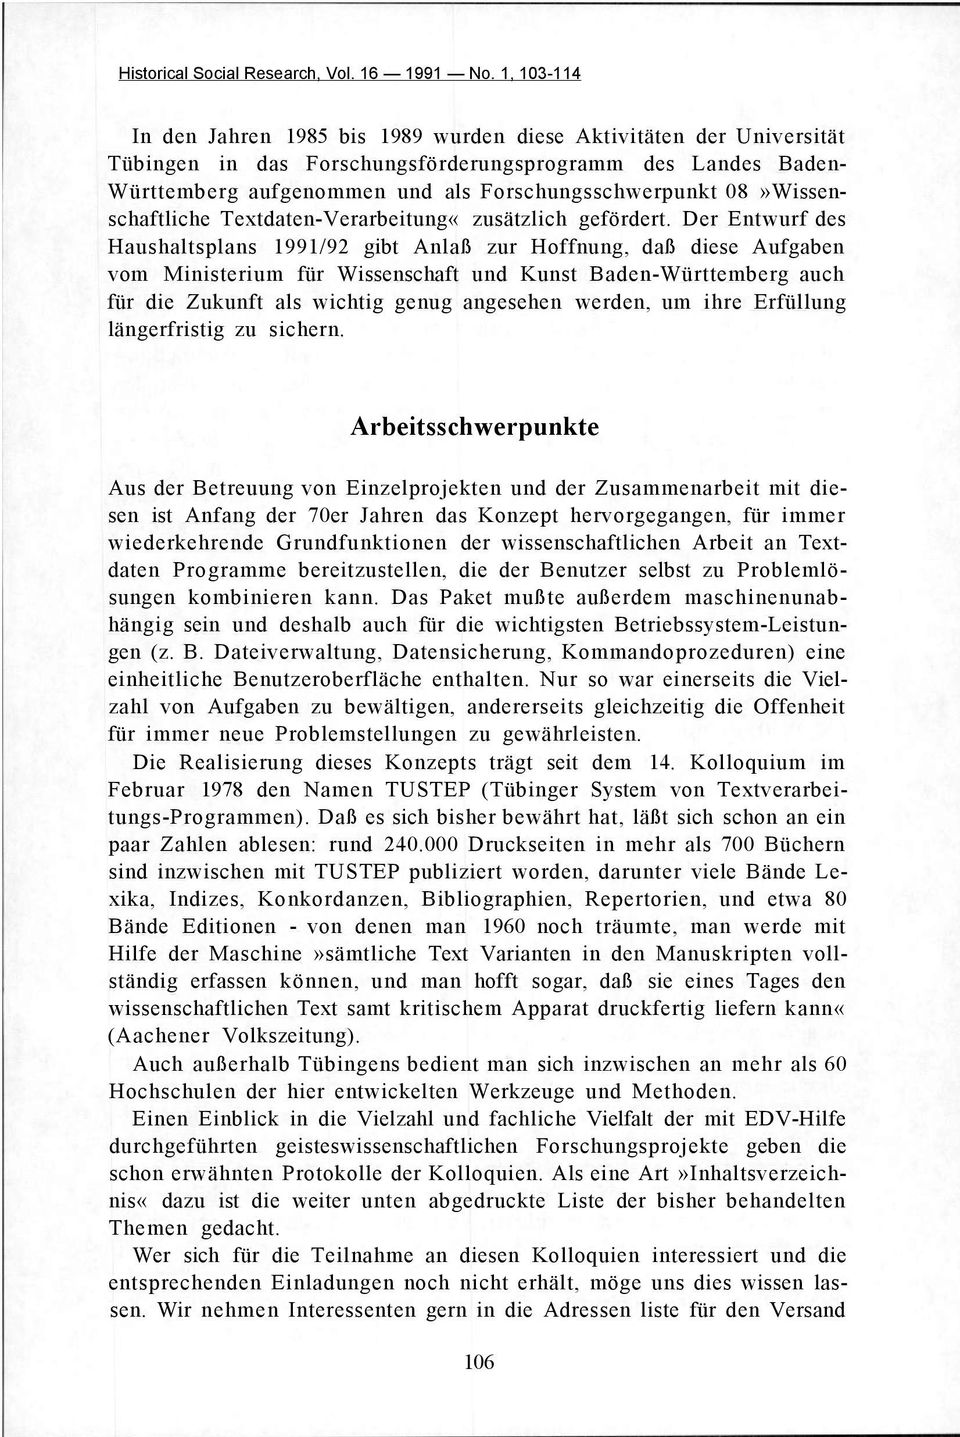 Der Entwurf des Haushaltsplans 1991/92 gibt Anlaß zur Hoffnung, daß diese Aufgaben vom Ministerium für Wissenschaft und Kunst Baden-Württemberg auch für die Zukunft als wichtig genug angesehen